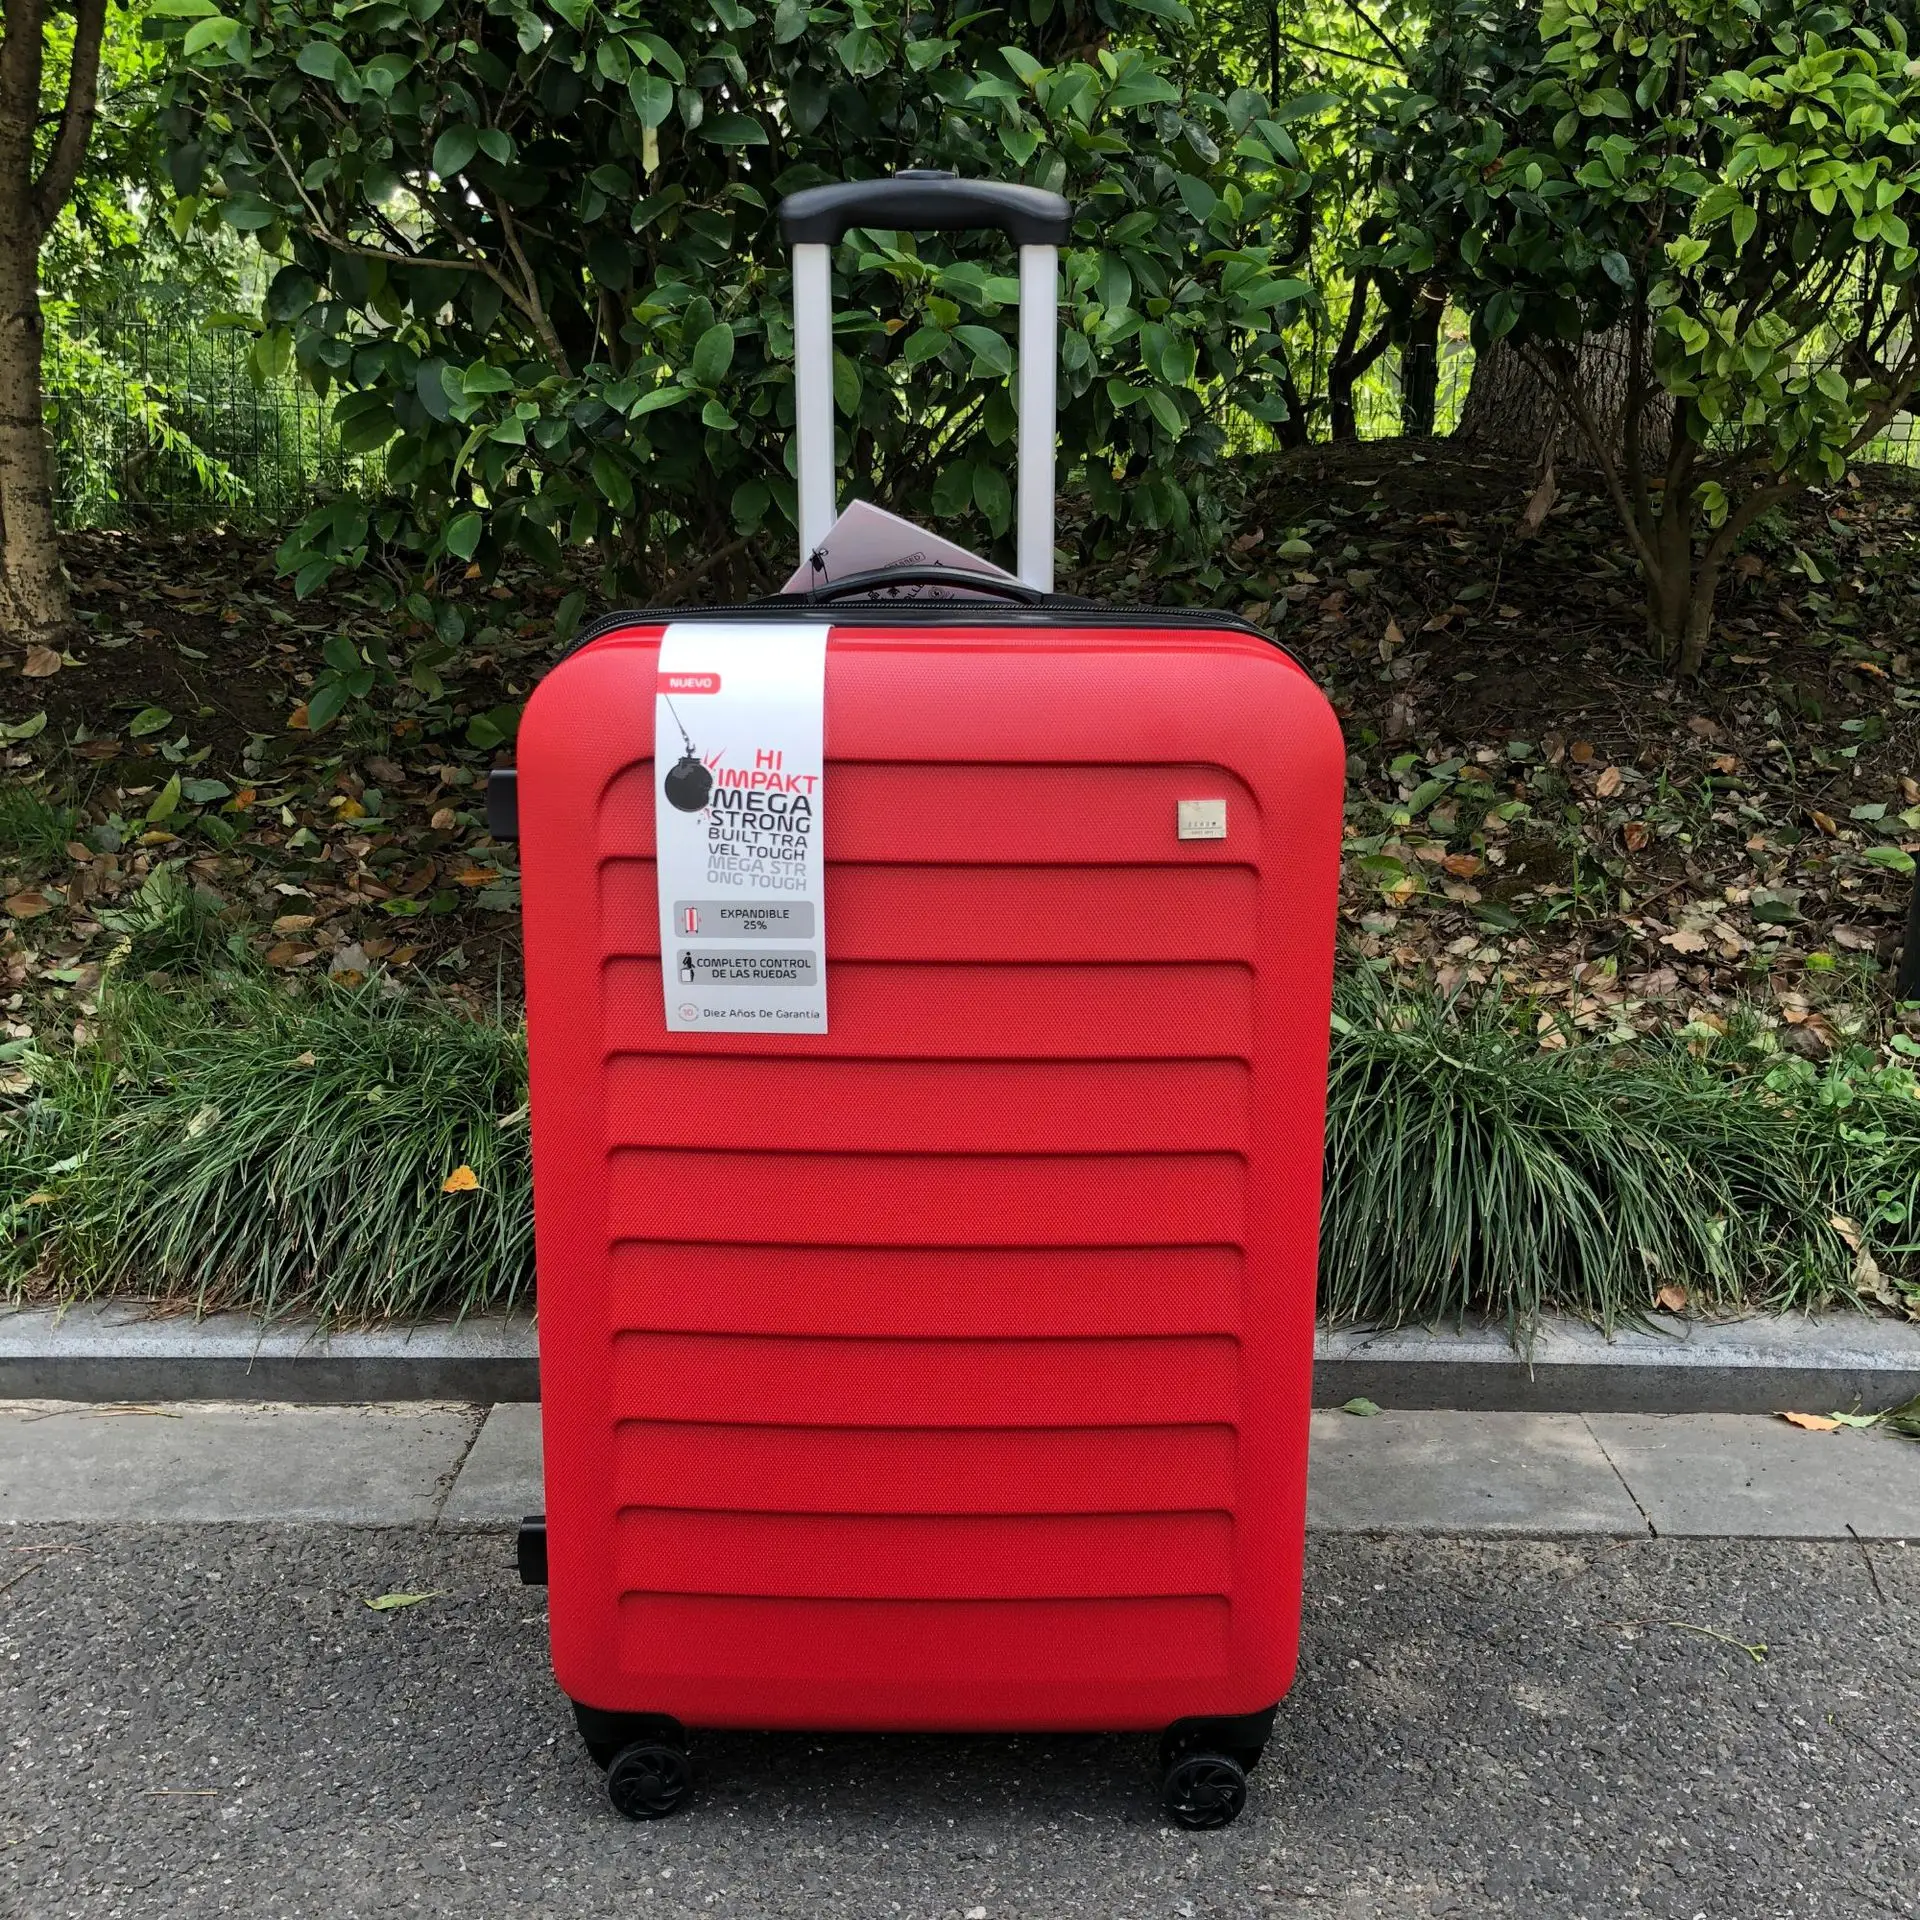 Travel tale 2" 25 29" дюймов АБС расширяемый чемодан на колесиках чемодан красного и черного цвета на колёсиках с колесами - Цвет: red 1pcs